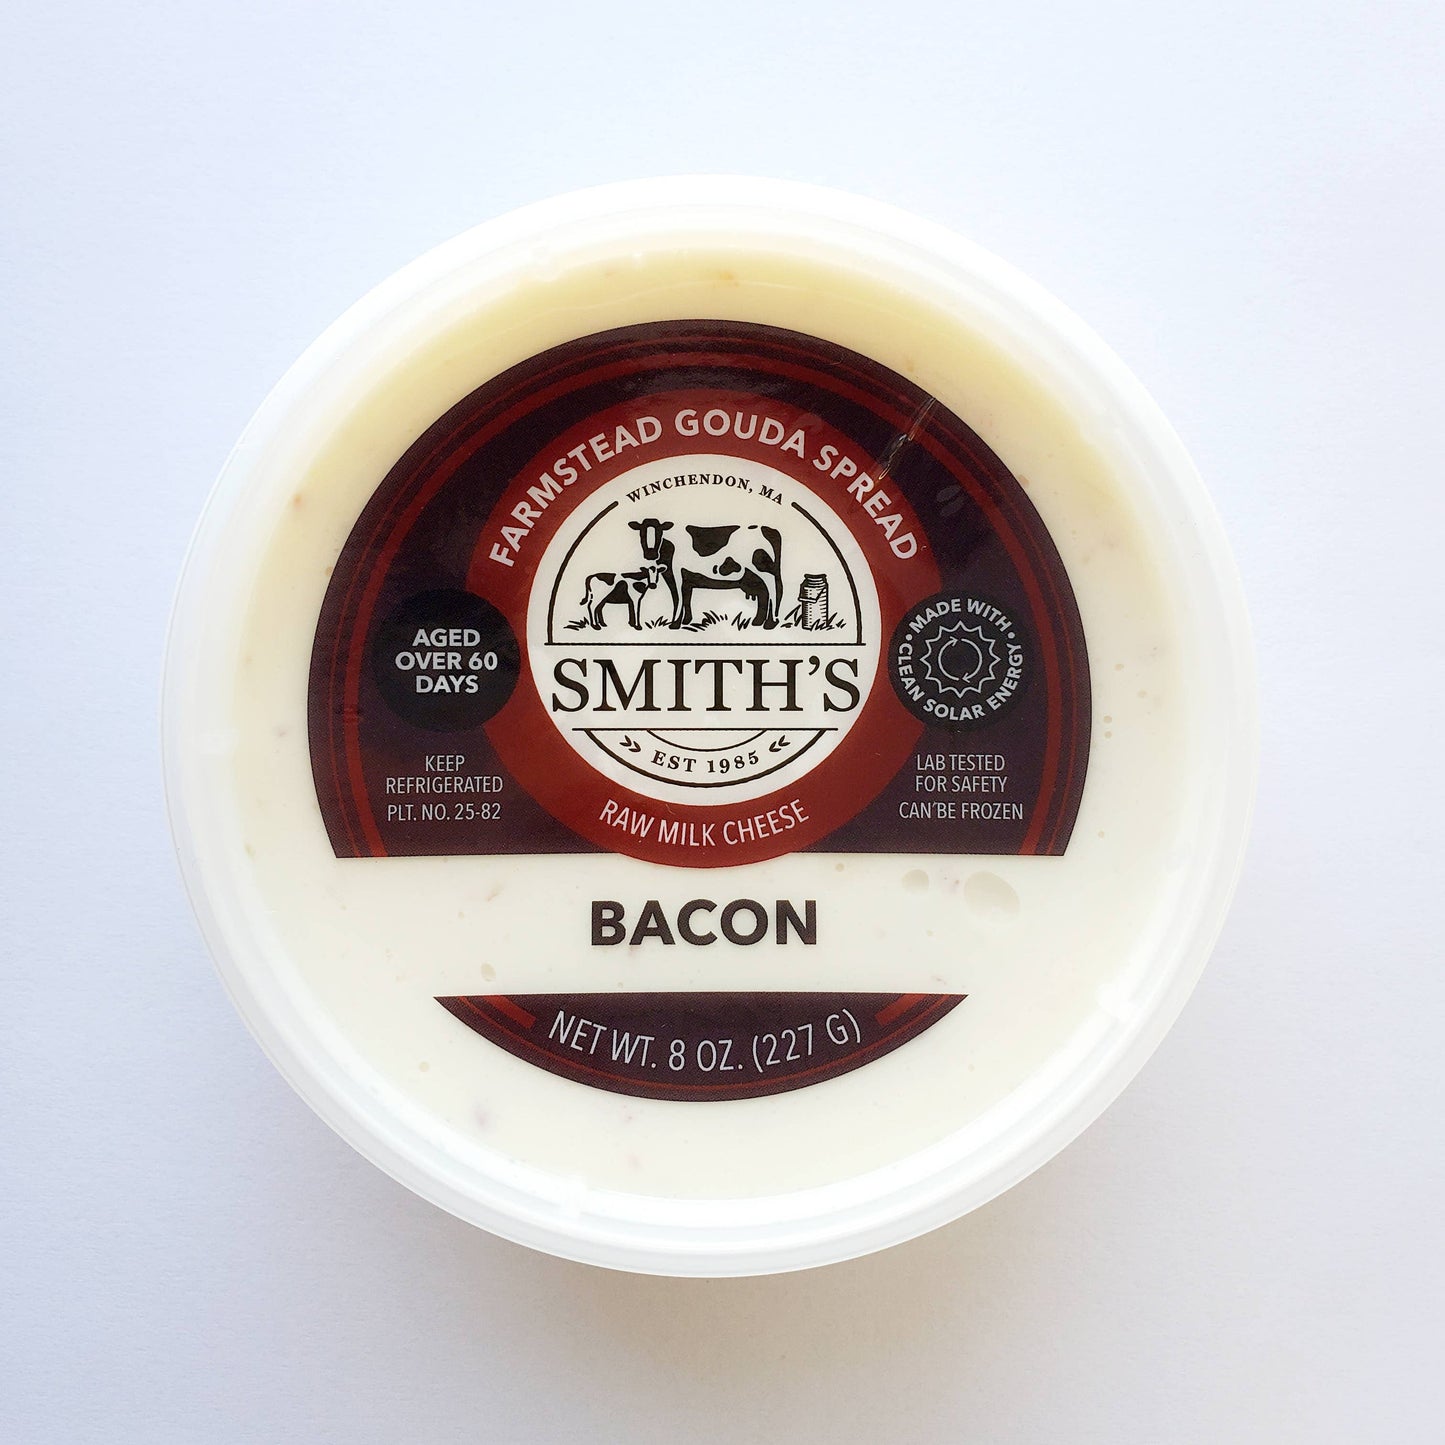 Smith's Country Cheese - Bacon Gouda Spread